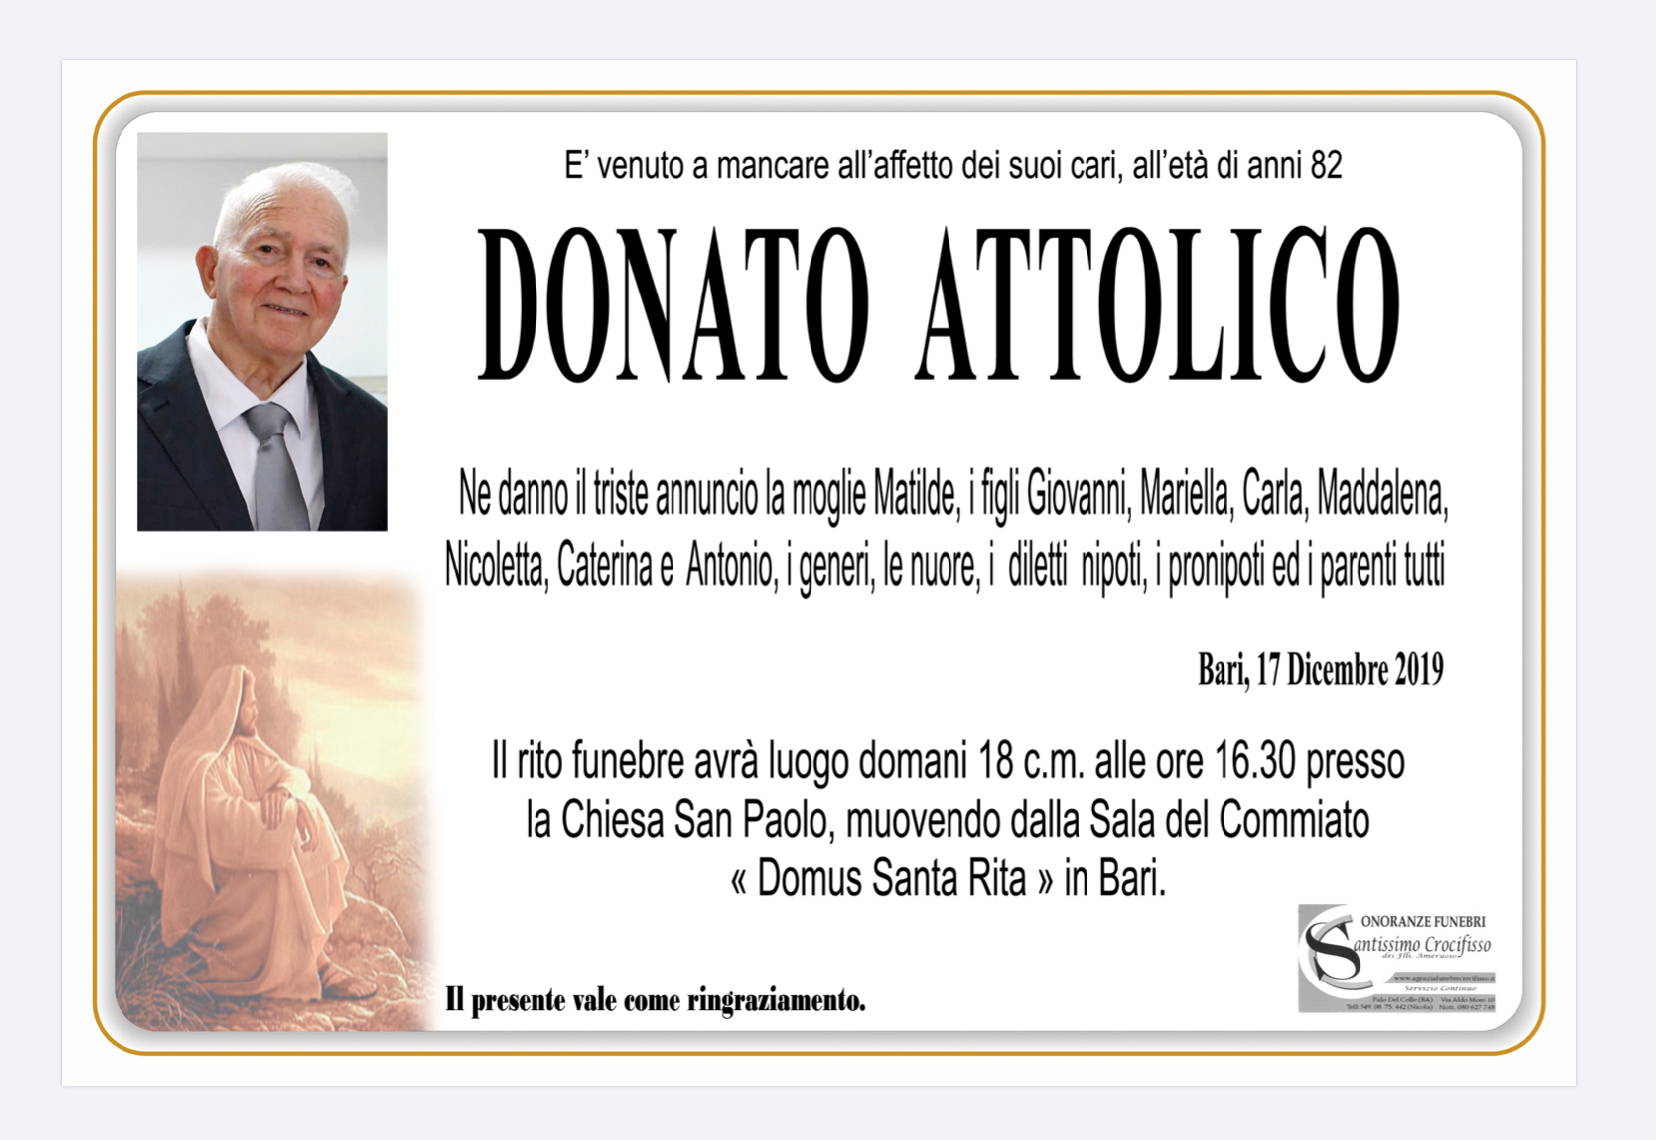 Donato Attolico